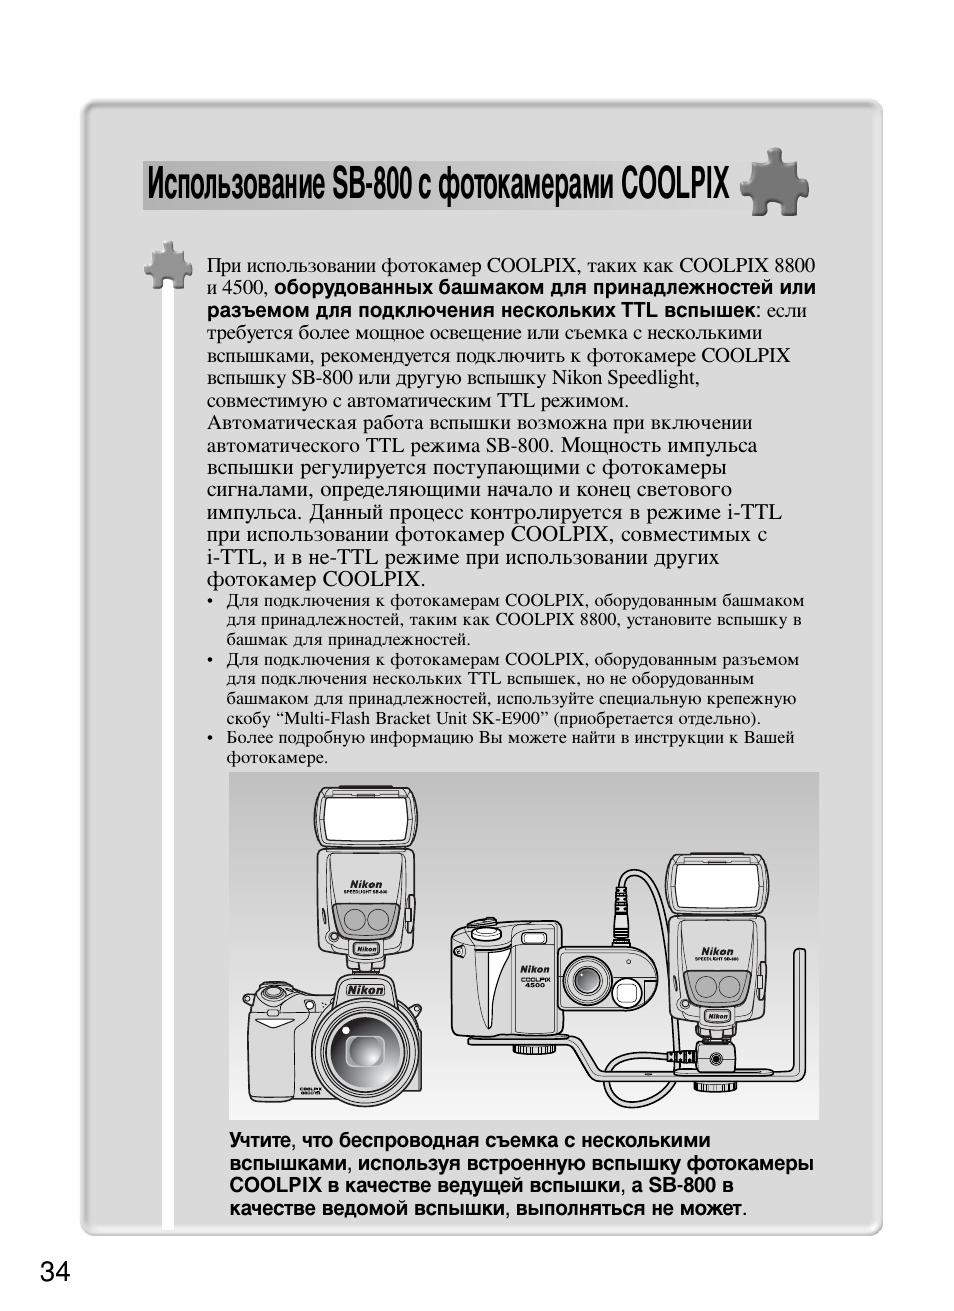 Использование sb-800 с фотокамерами coolpix | Инструкция по эксплуатации Nikon Speedlite SB-800 | Страница 40 / 132